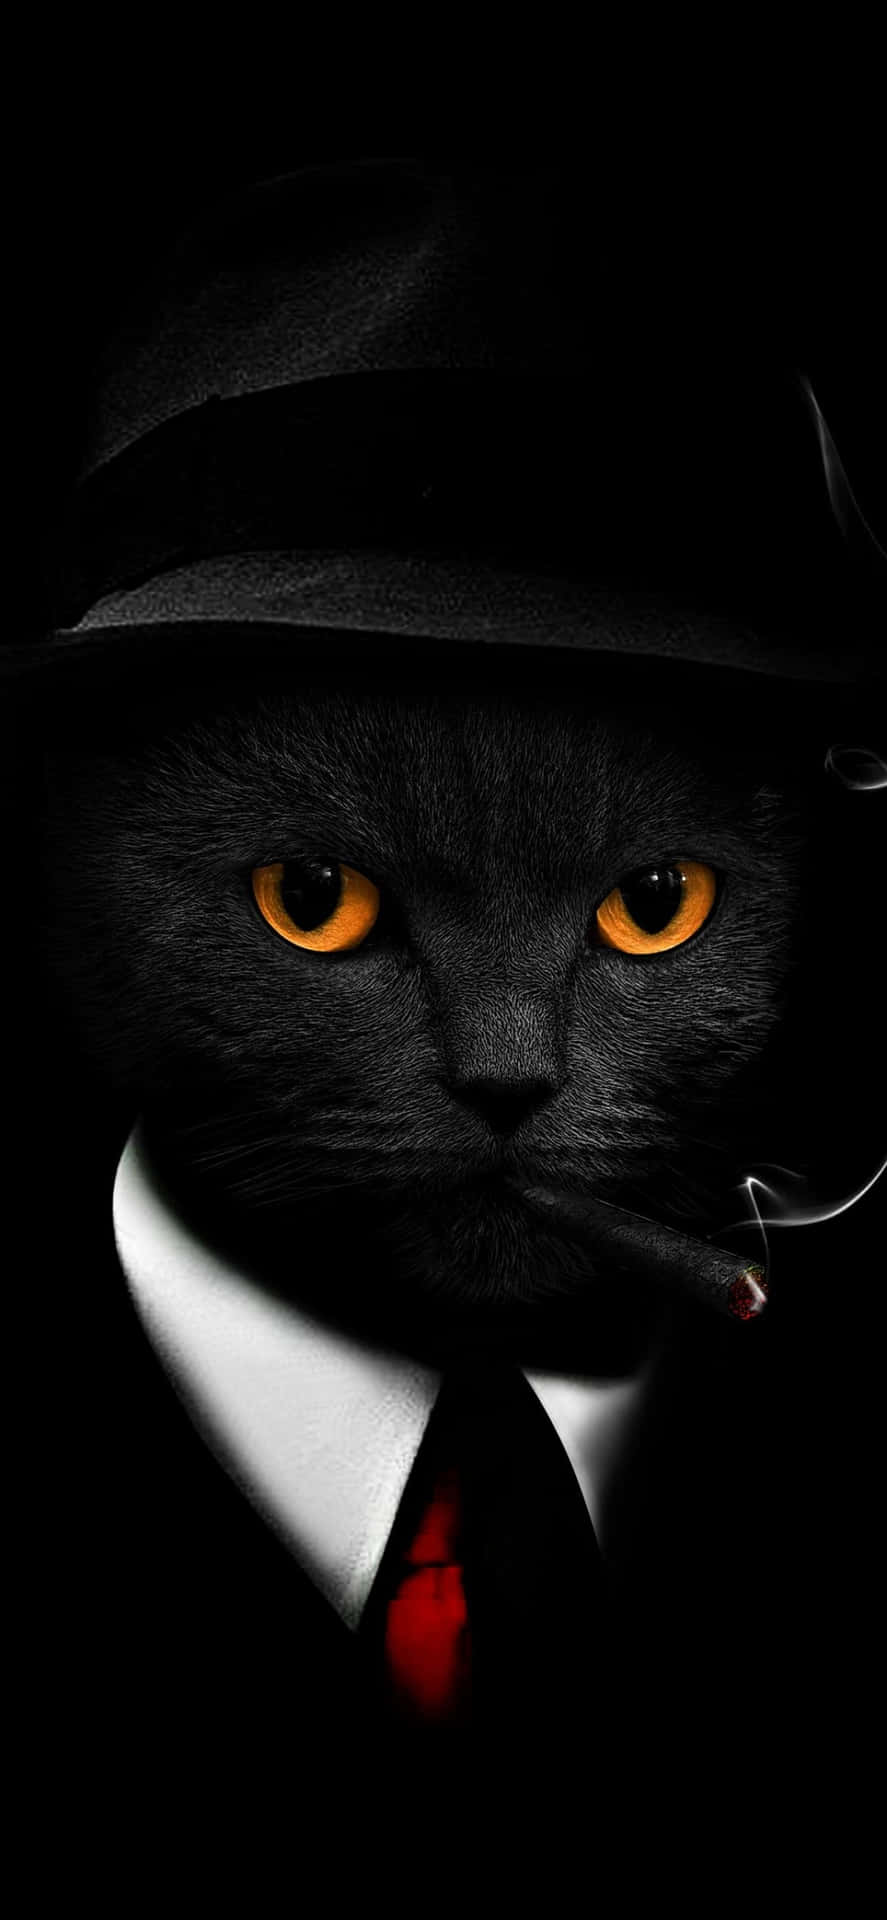 Mysterious Noir Cat Aesthetic.jpg Wallpaper